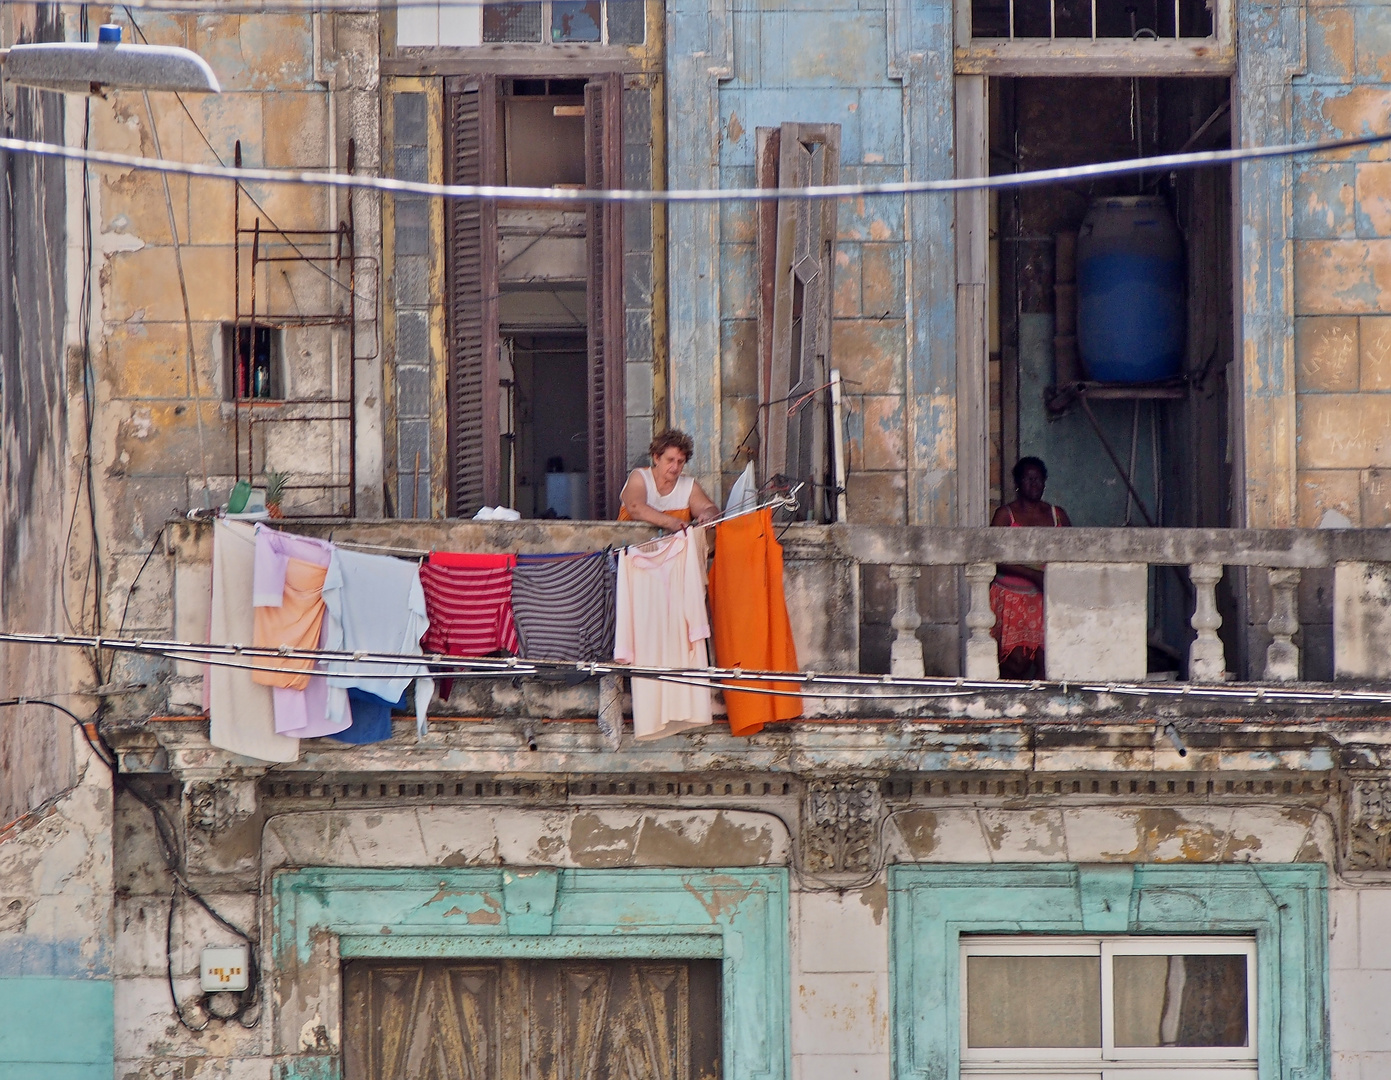 Der Waschtag in Havanna ist bunt . . .